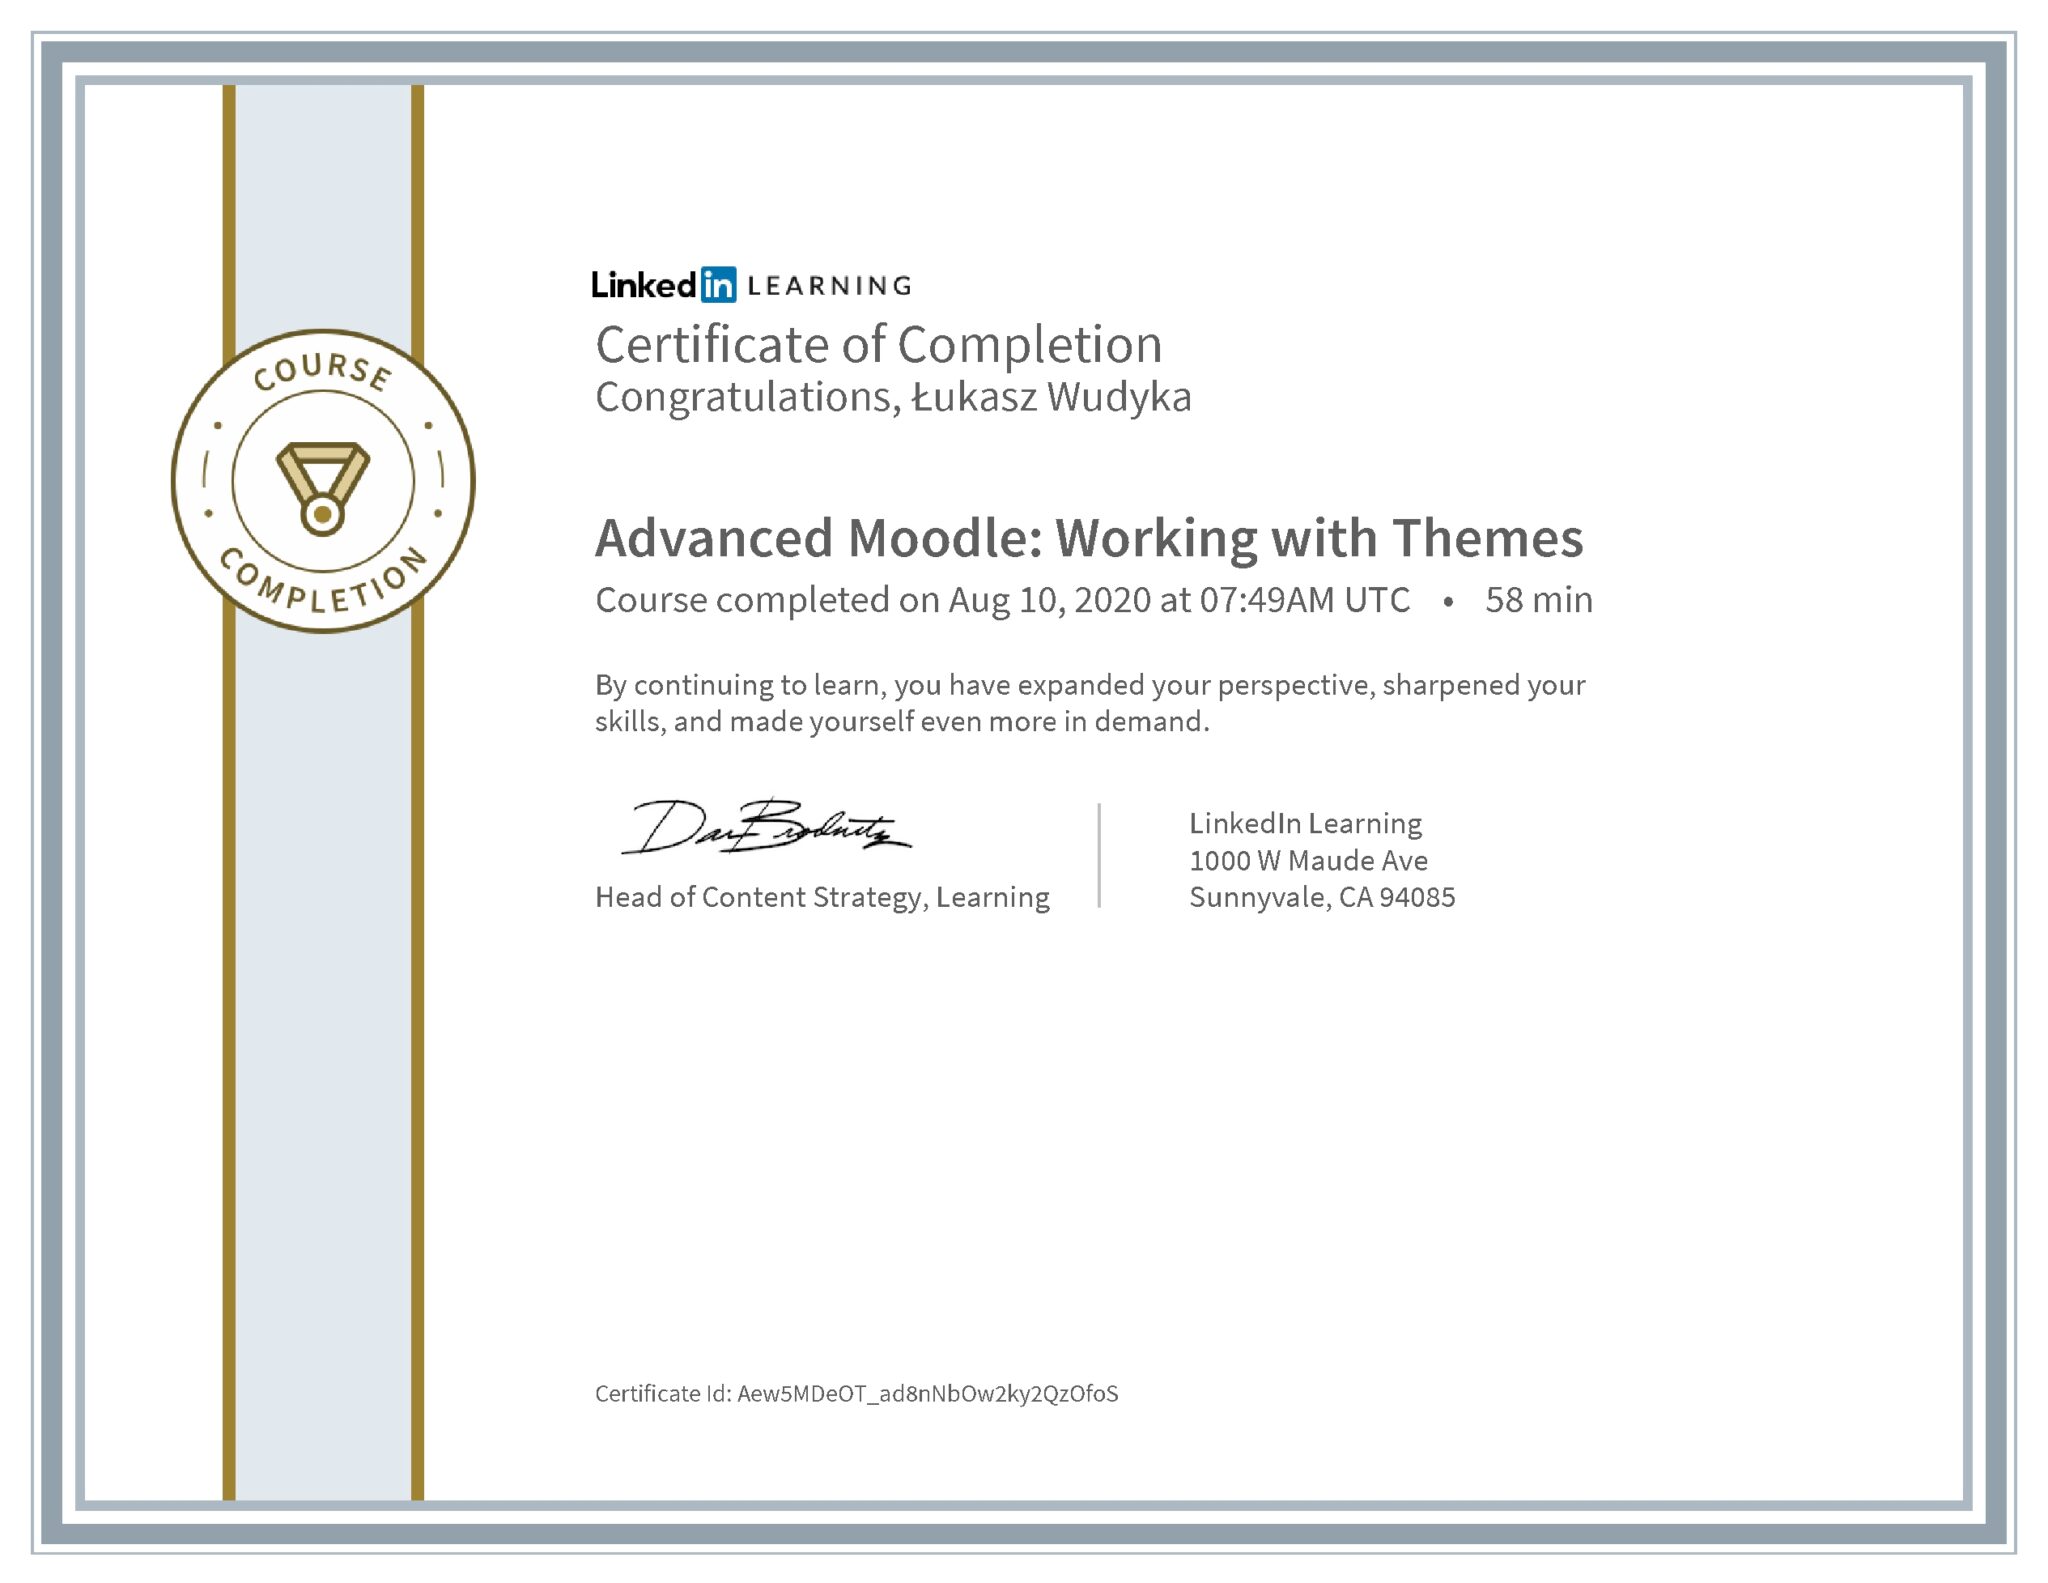 Łukasz Wudyka certyfikat LinkedIn Advanced Moodle: Working with Themes